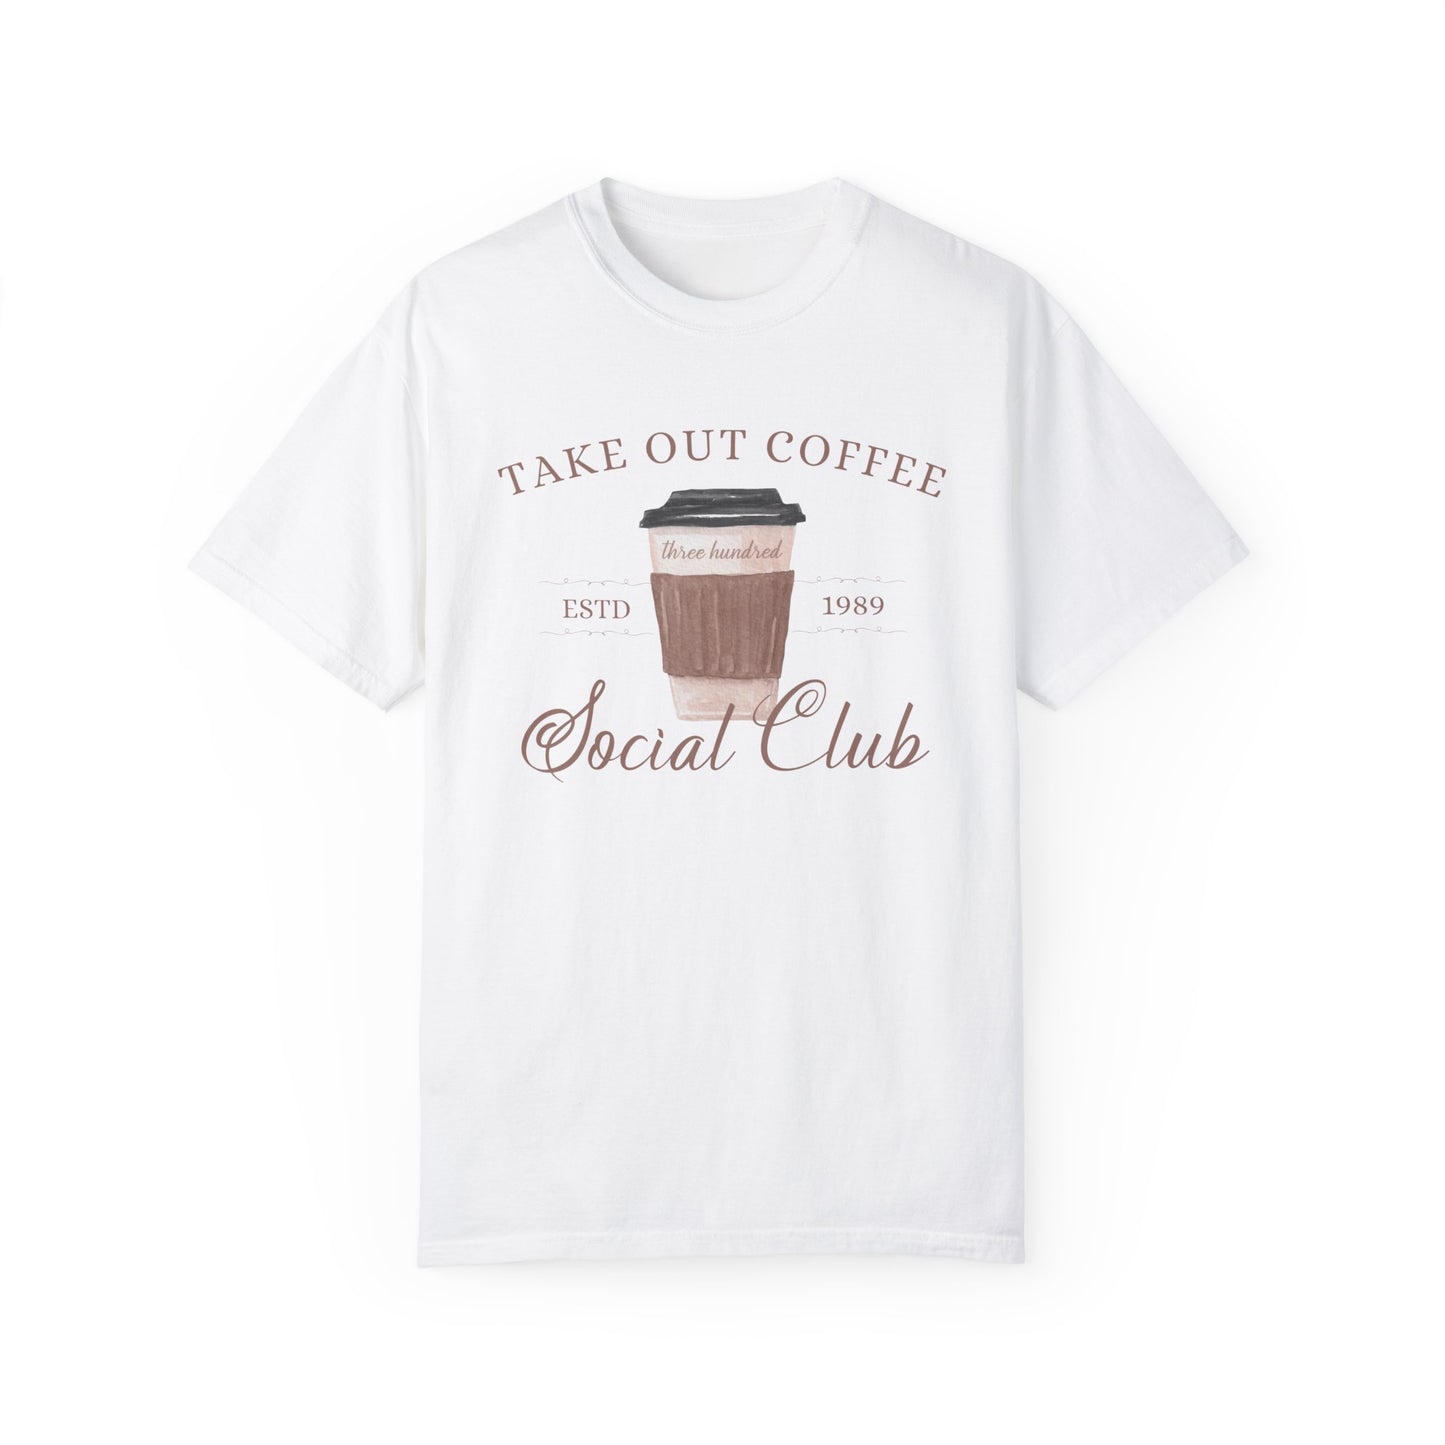 Take Out Coffee Social Club T-shirt